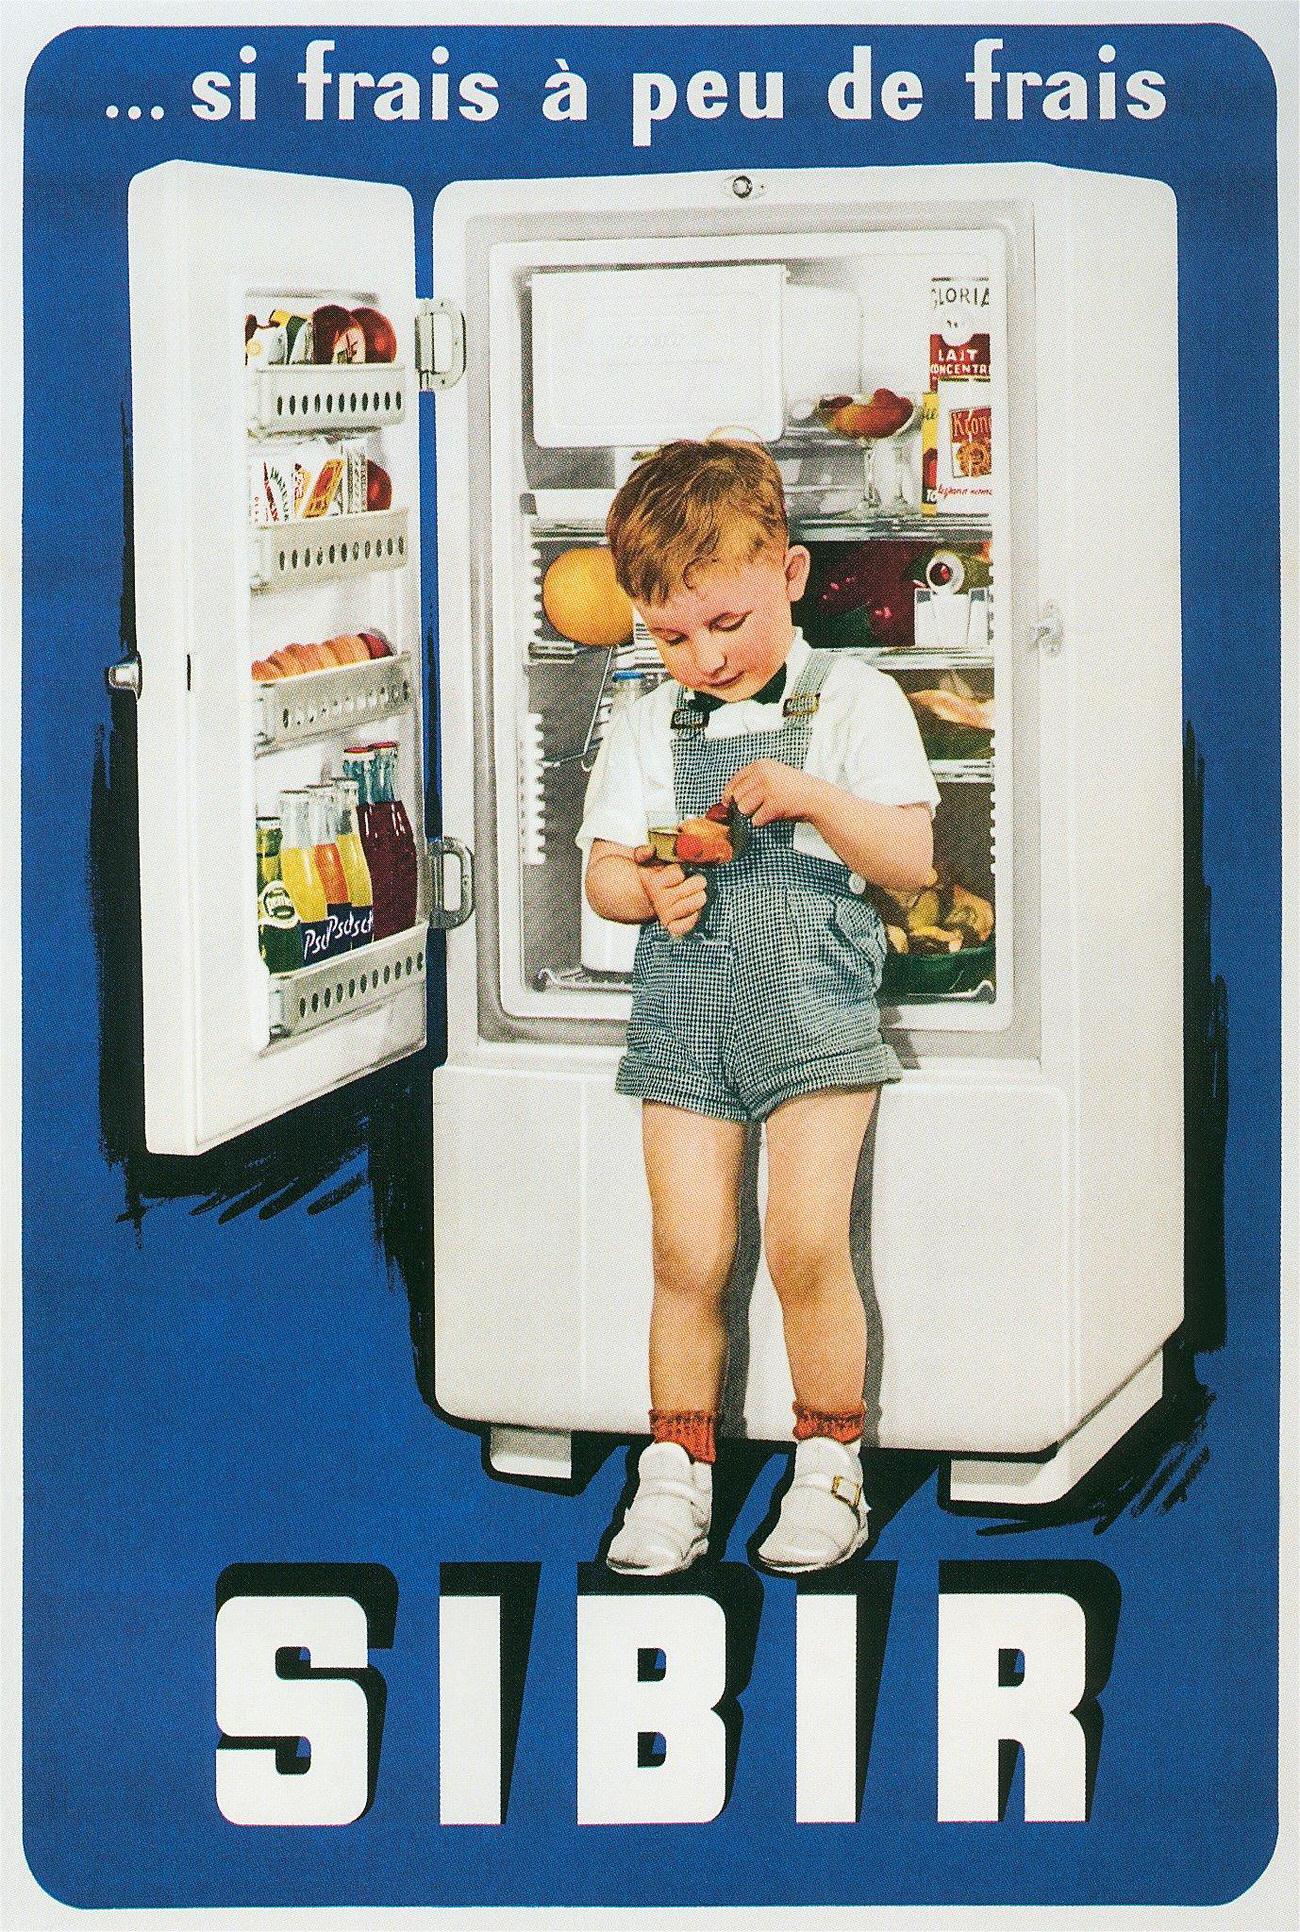 French Sibir refrigerator ad, "…si frais a peu de frais."